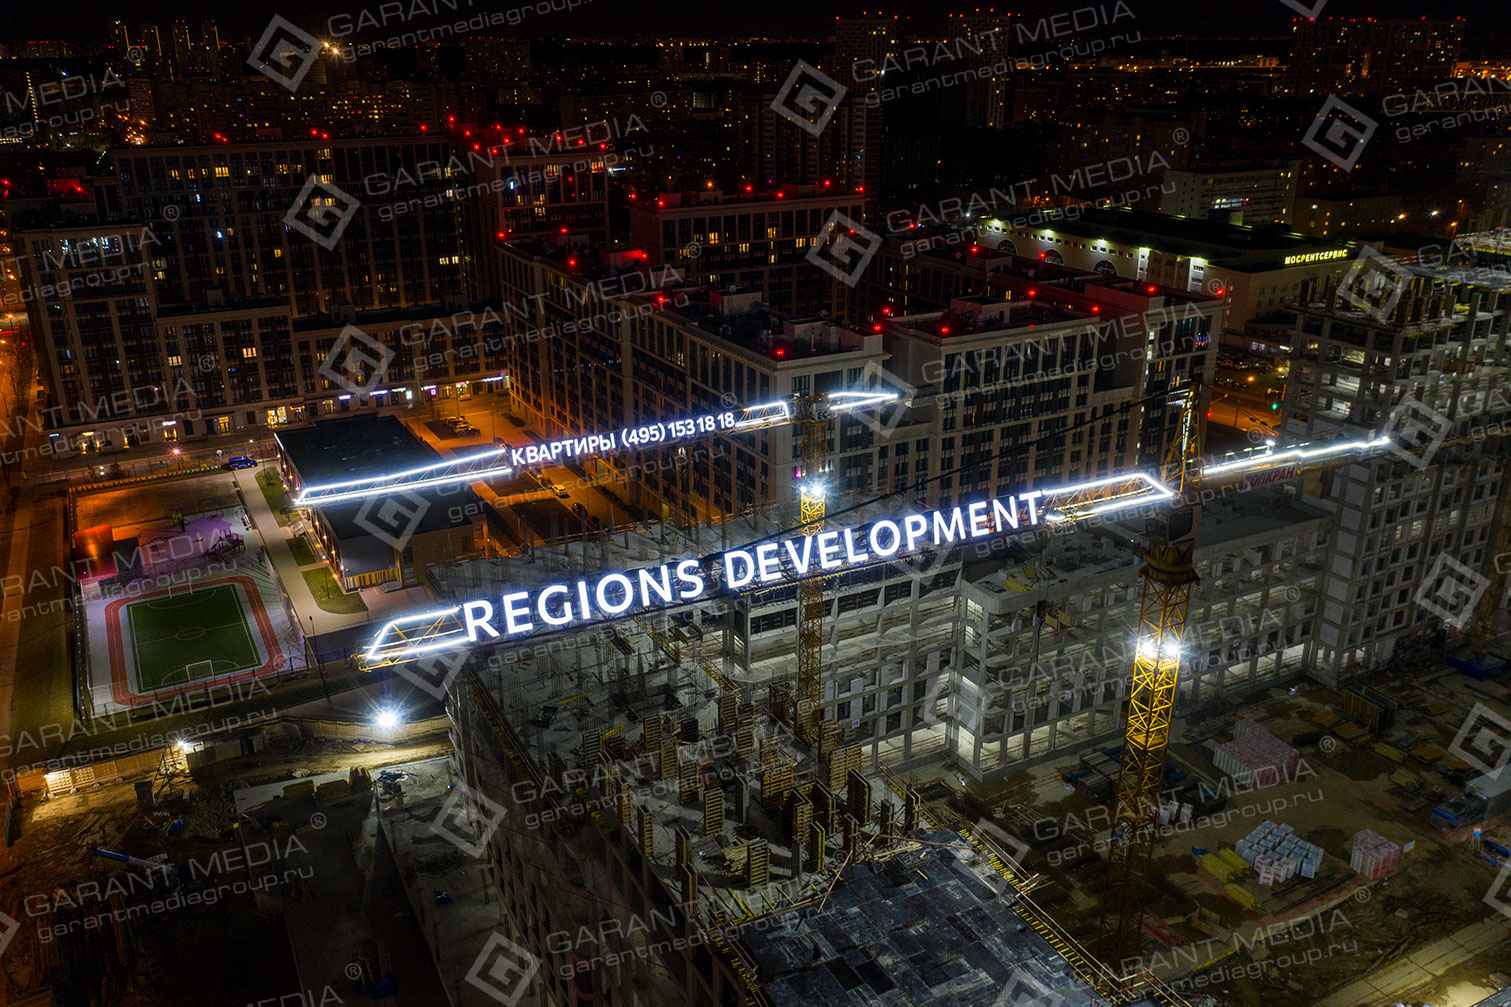 Брендирование башенного крана Regions Development